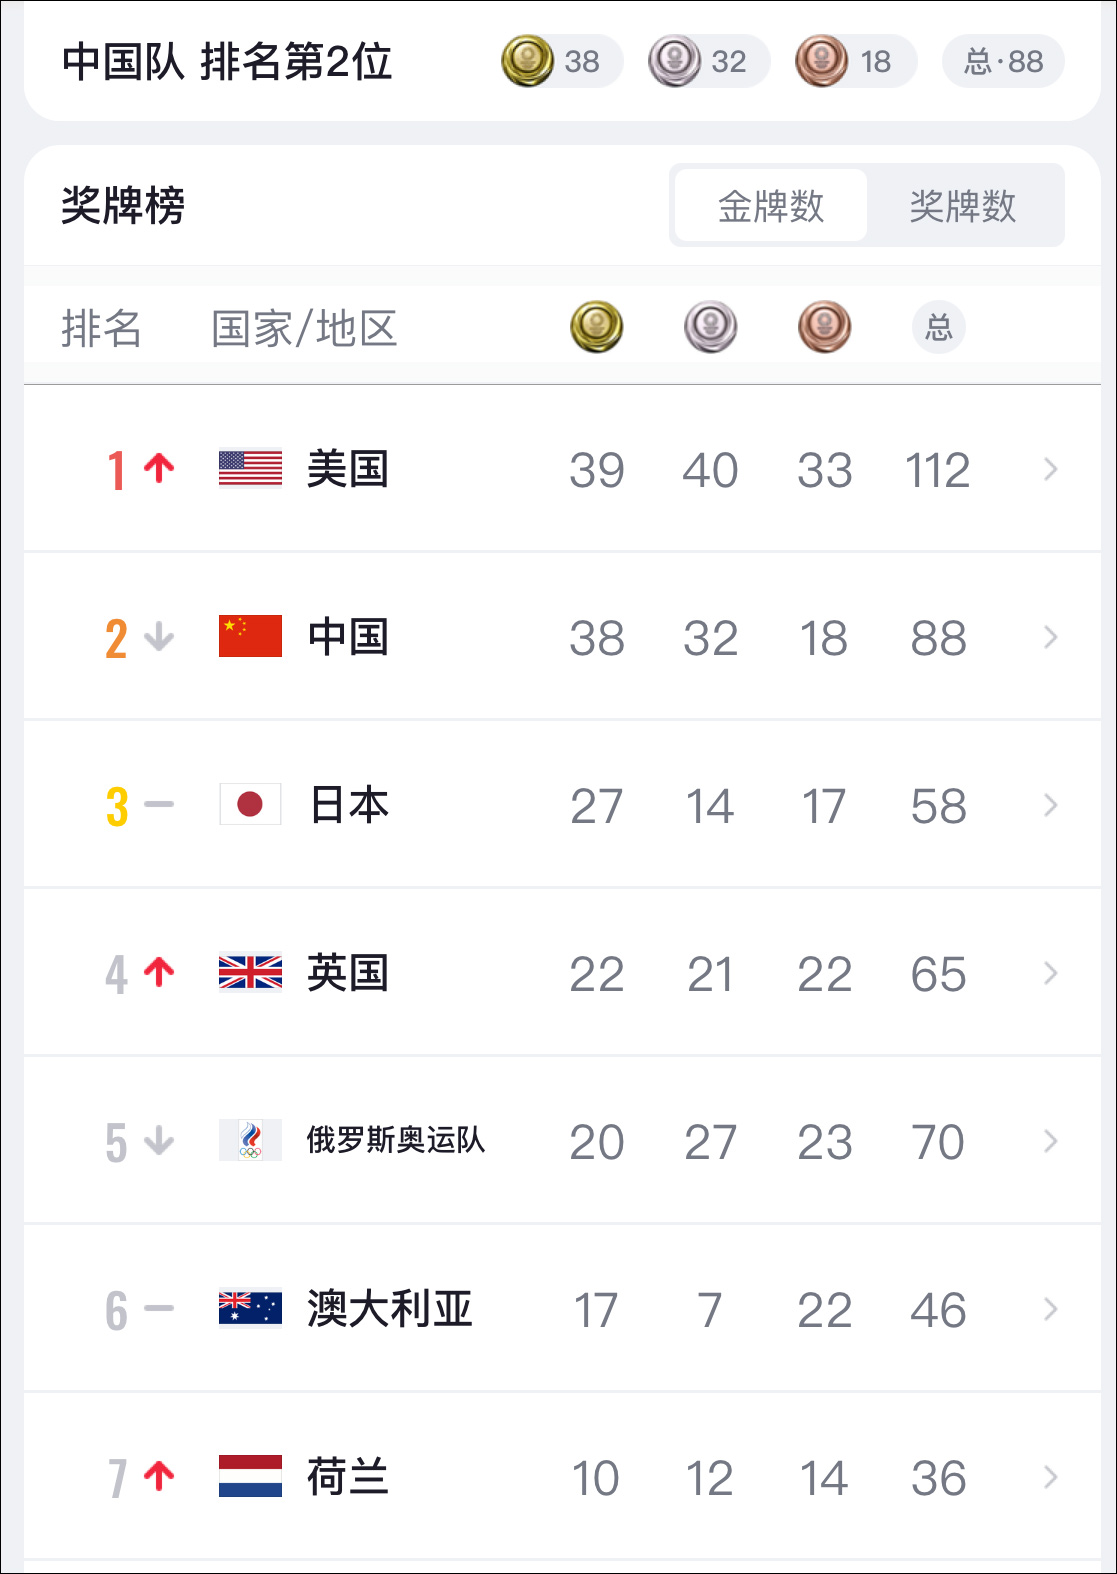 2020年东京奥运金牌榜,有人把香港,台湾一起算入中国的金牌数,这当然